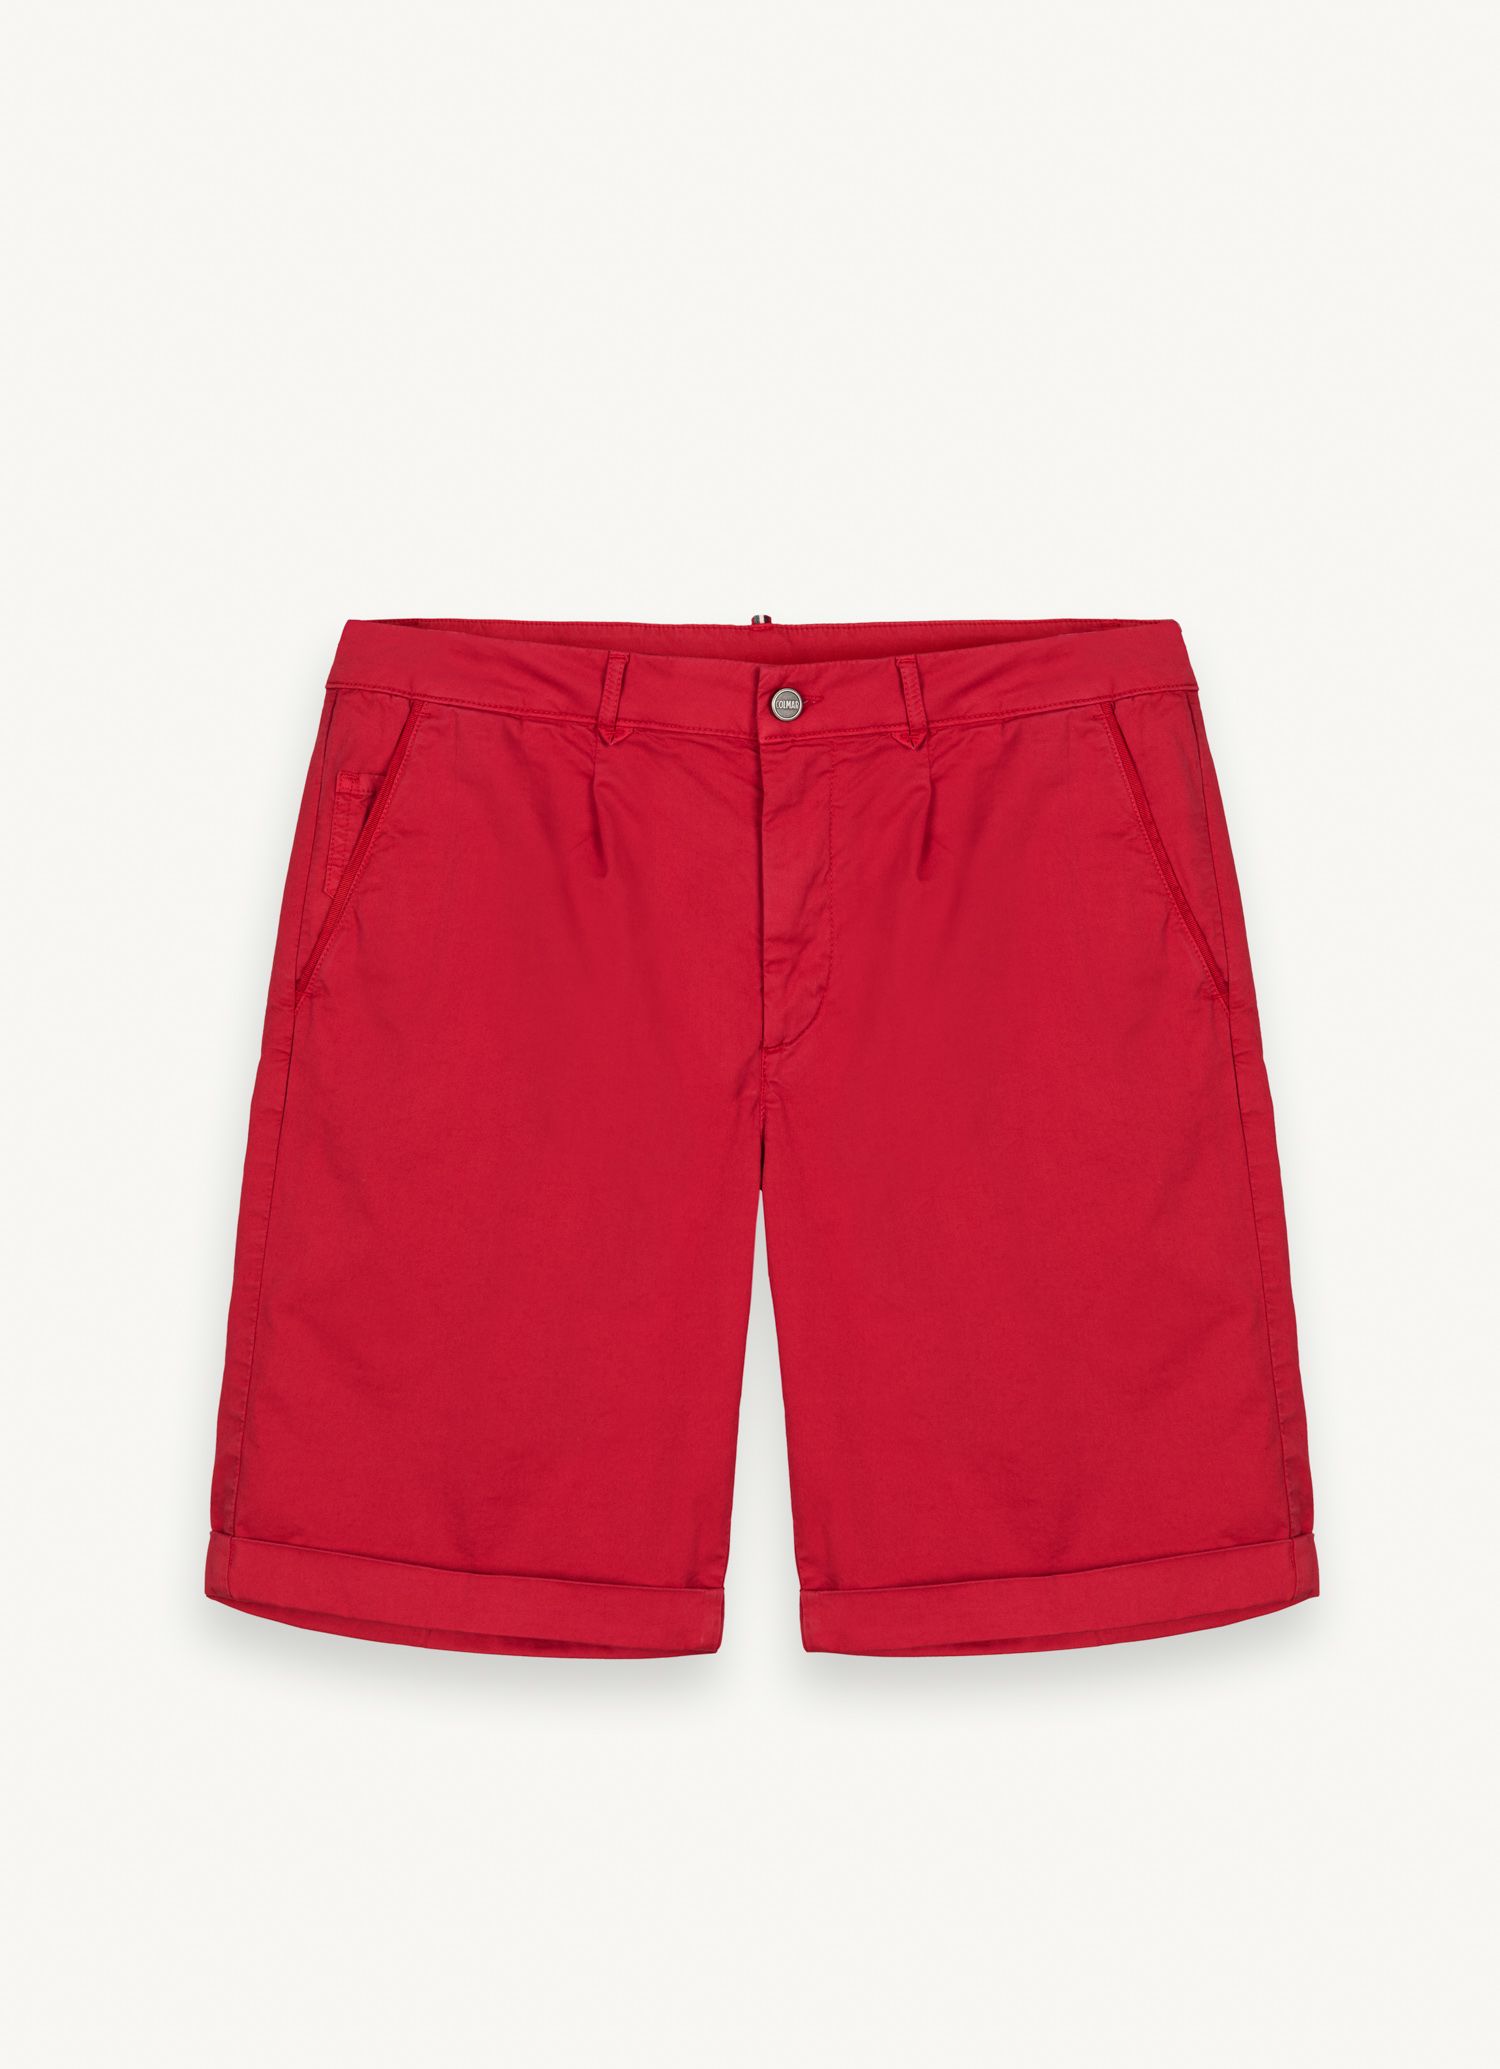 Pantalones cortos para hombre: tendencias en bermudas de verano